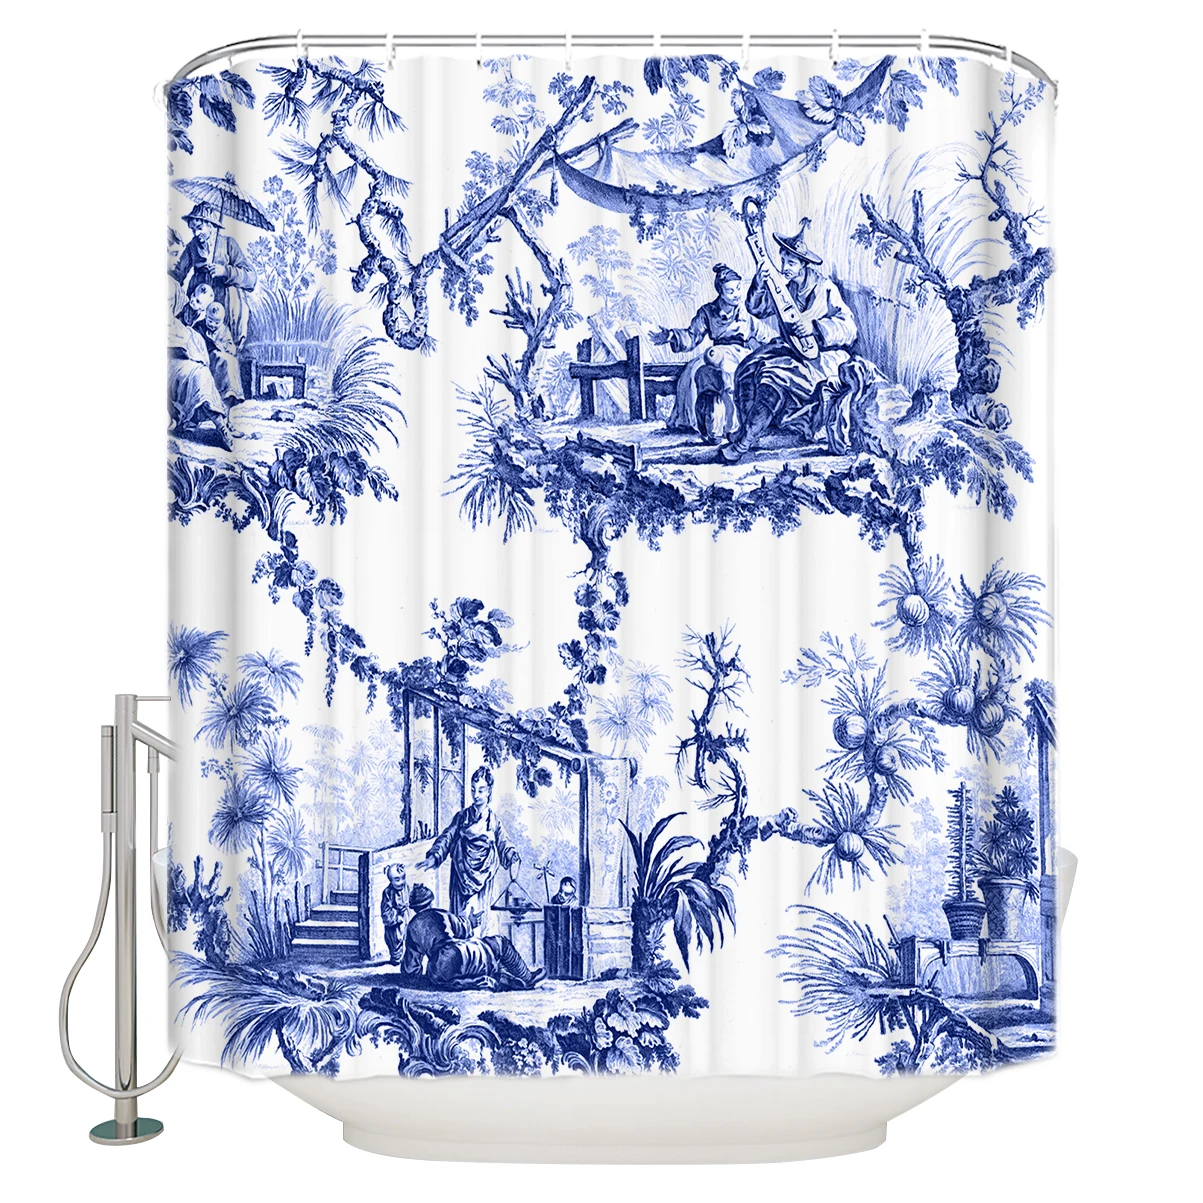 WARMTOUR занавески для душа синие chinoiseroe Toile удлиненные тканевые занавески для ванной, декоративные наборы для ванной комнаты с крючками